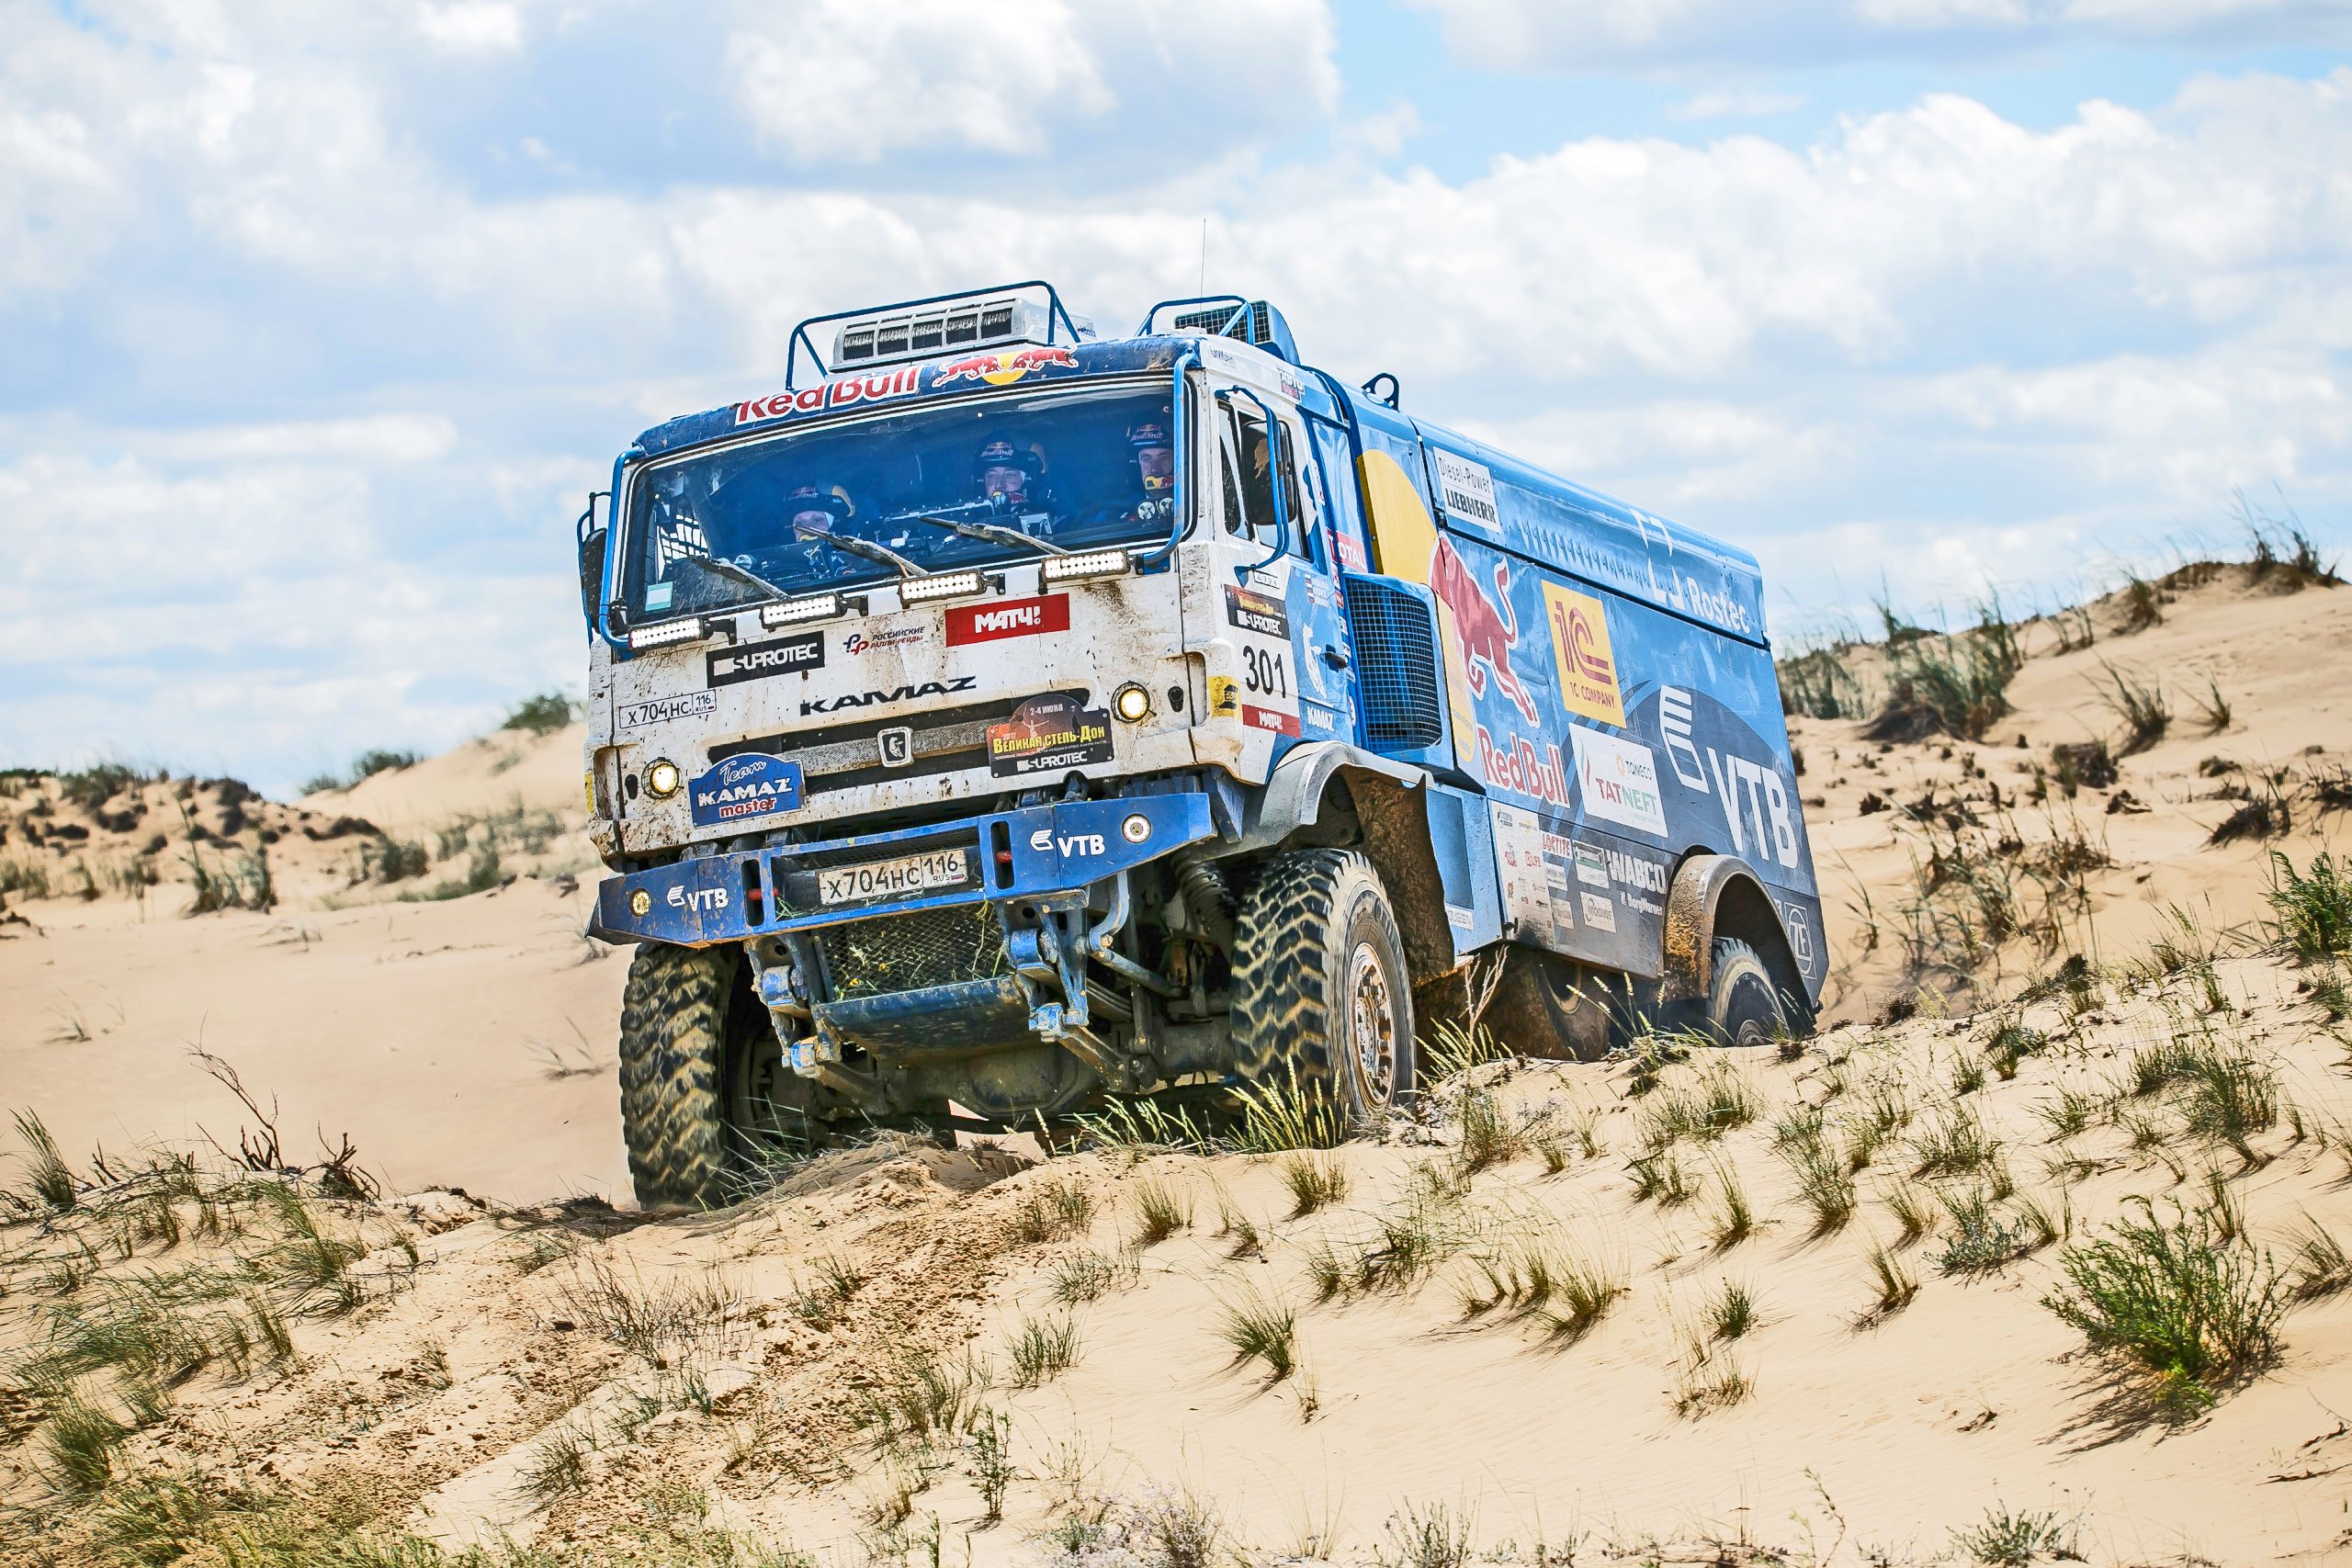 Desert Dune Kamaz Rallying Red Bull Sand Truck Vehicle 2560x1707